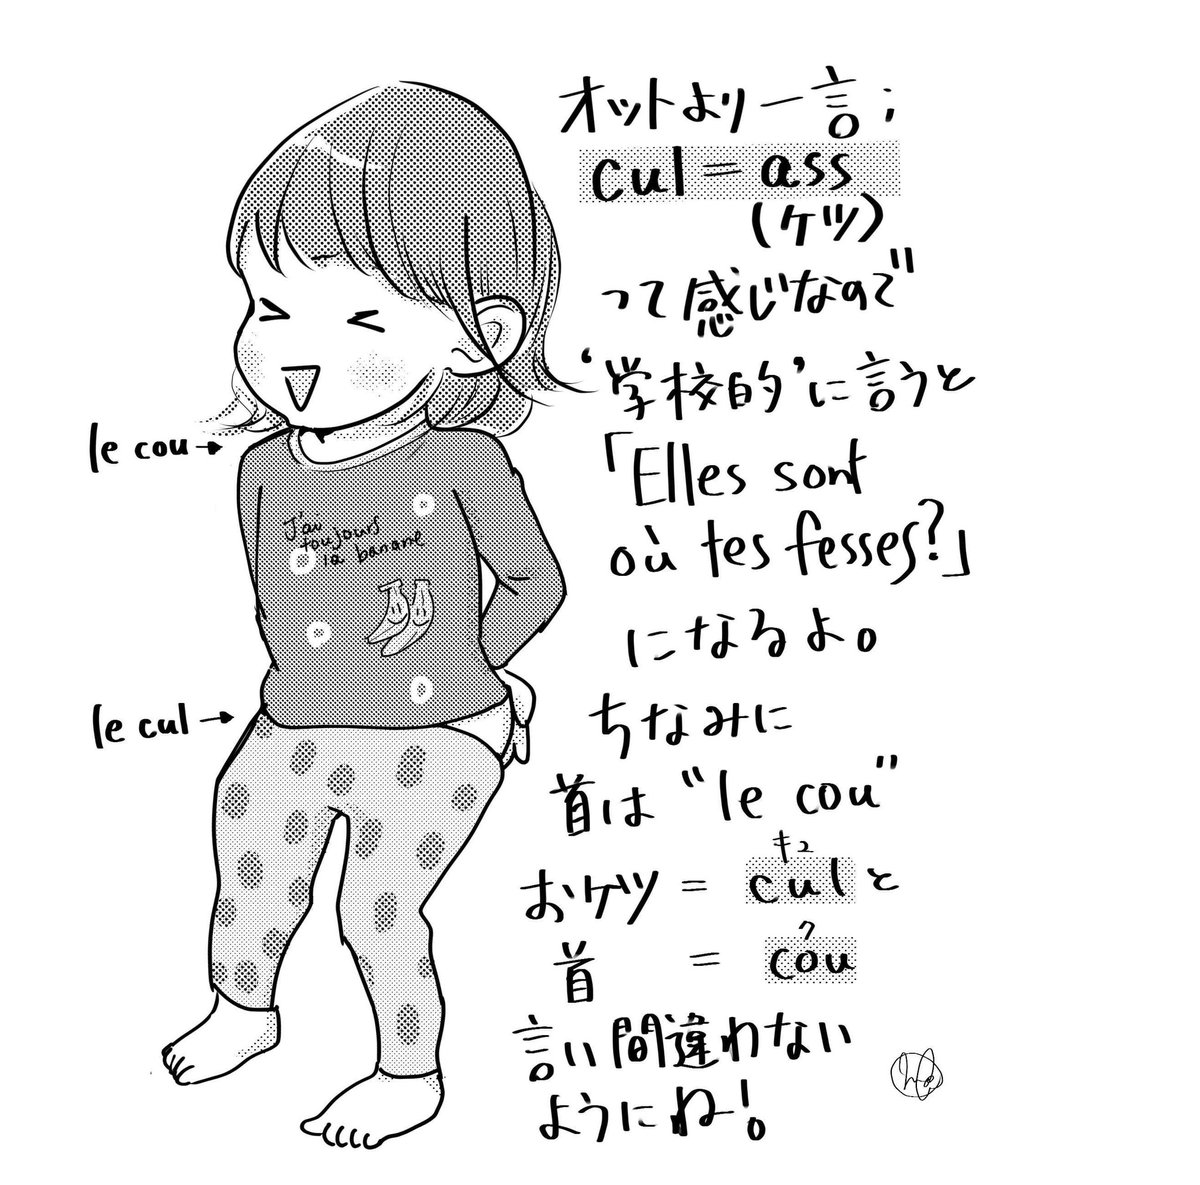 大場もも でも Cul キュ ってひびきがかわいい もう一つ Ca サ は これ ですが話の流れで意訳しました ここ は Ici イスィ を使います イラスト フランス バイリンガル フランス語 Illustration Illustrator Japanese Japonais